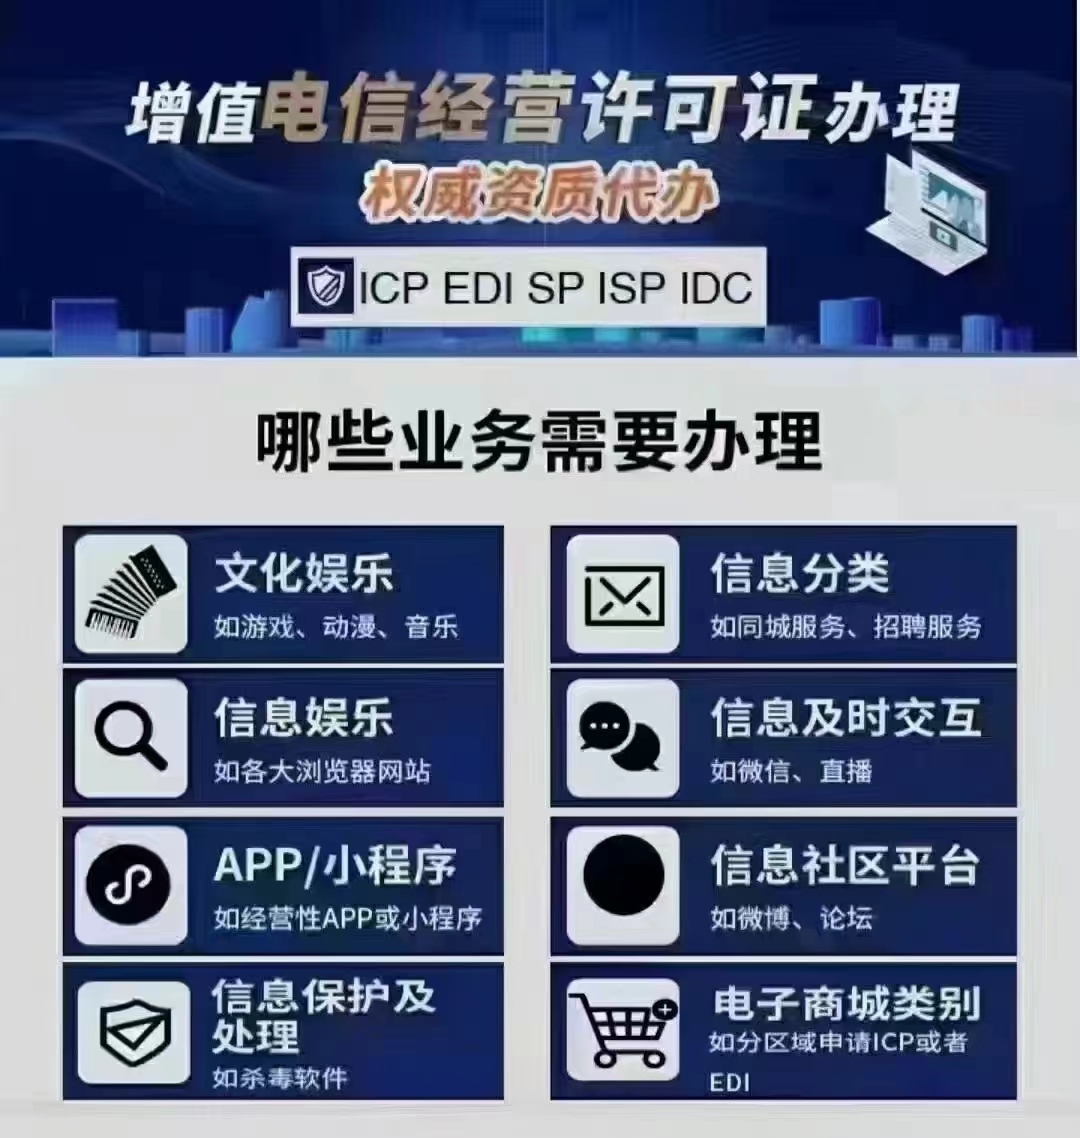 经营如下业务在北京市从事增值电信经营申请ICP许可证